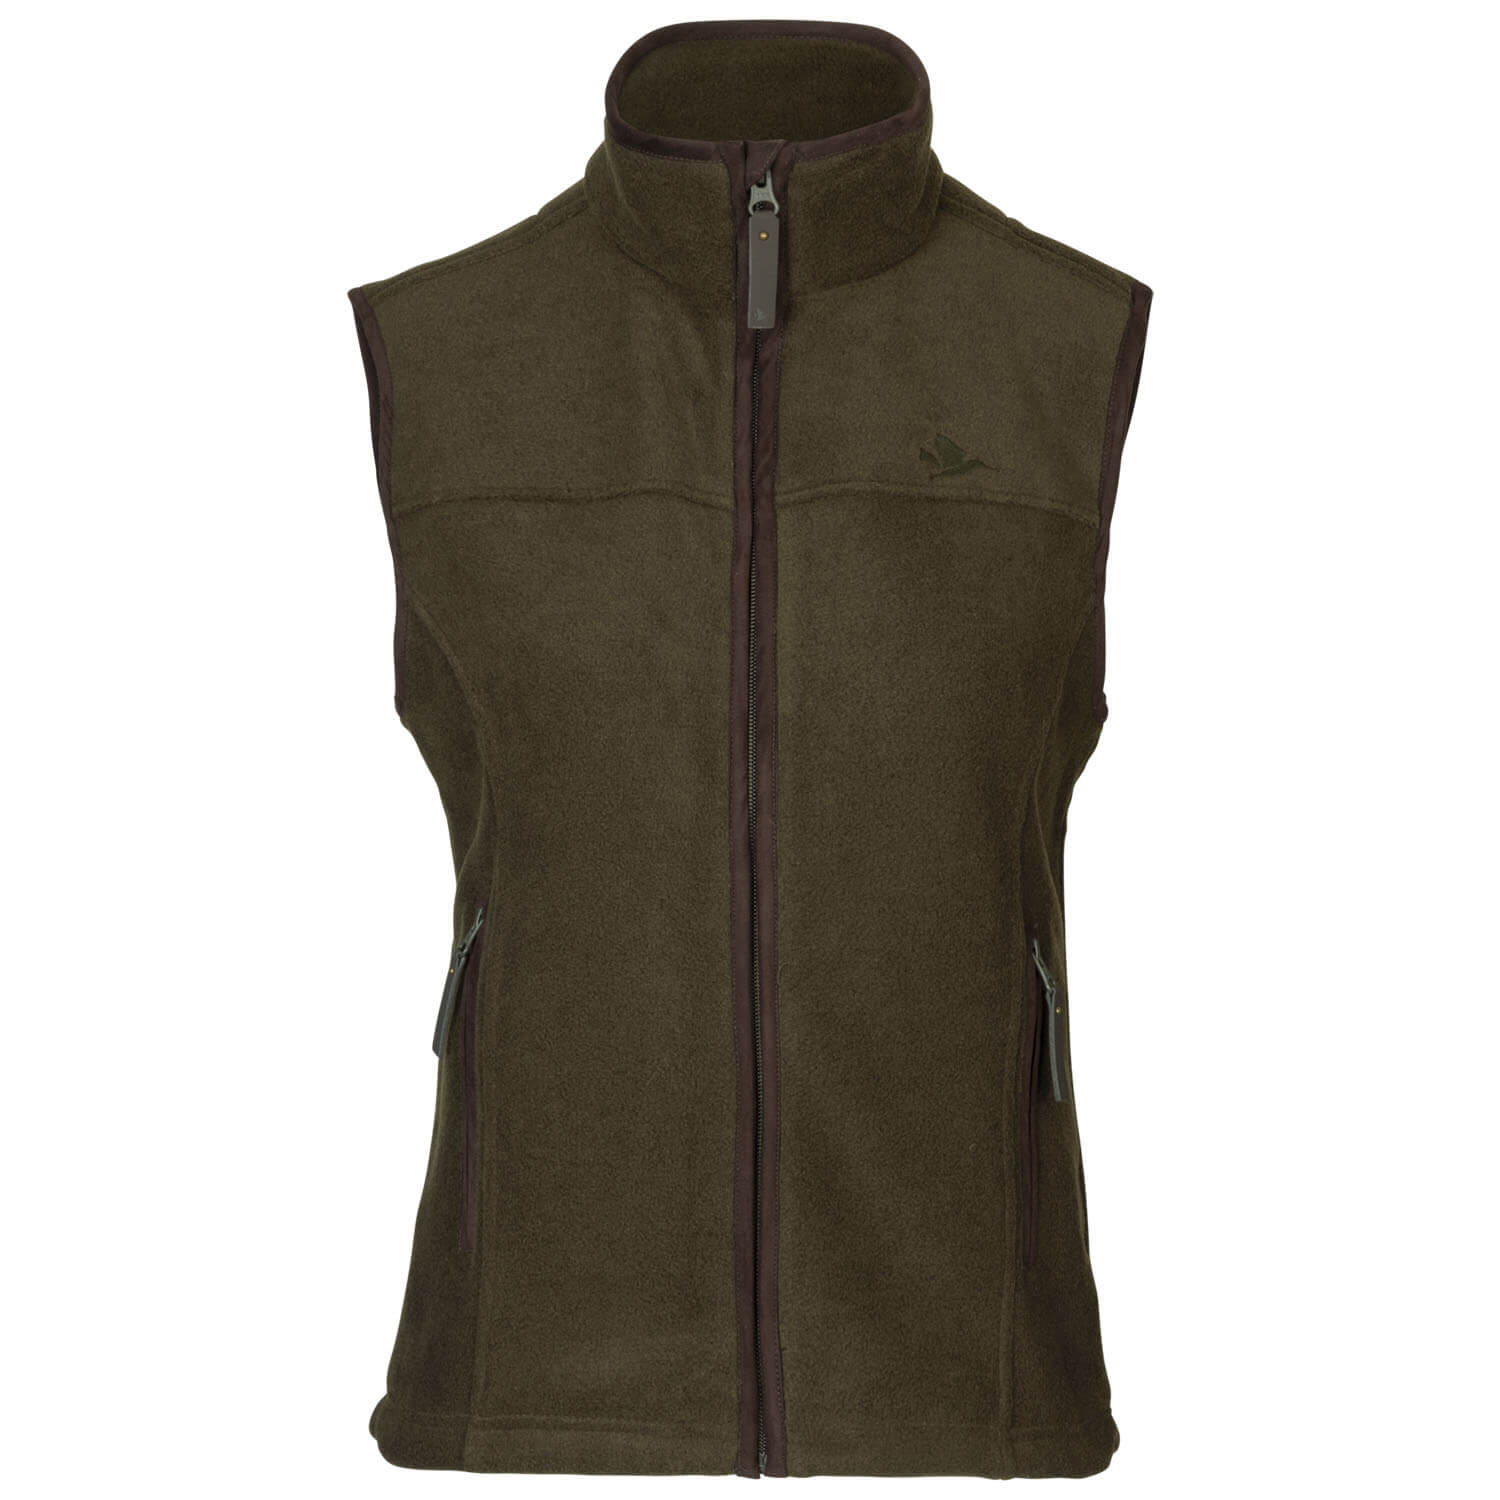 Seeland fleece vest Woodcock Ivy (pine green melange) - Vests & Waistcoats